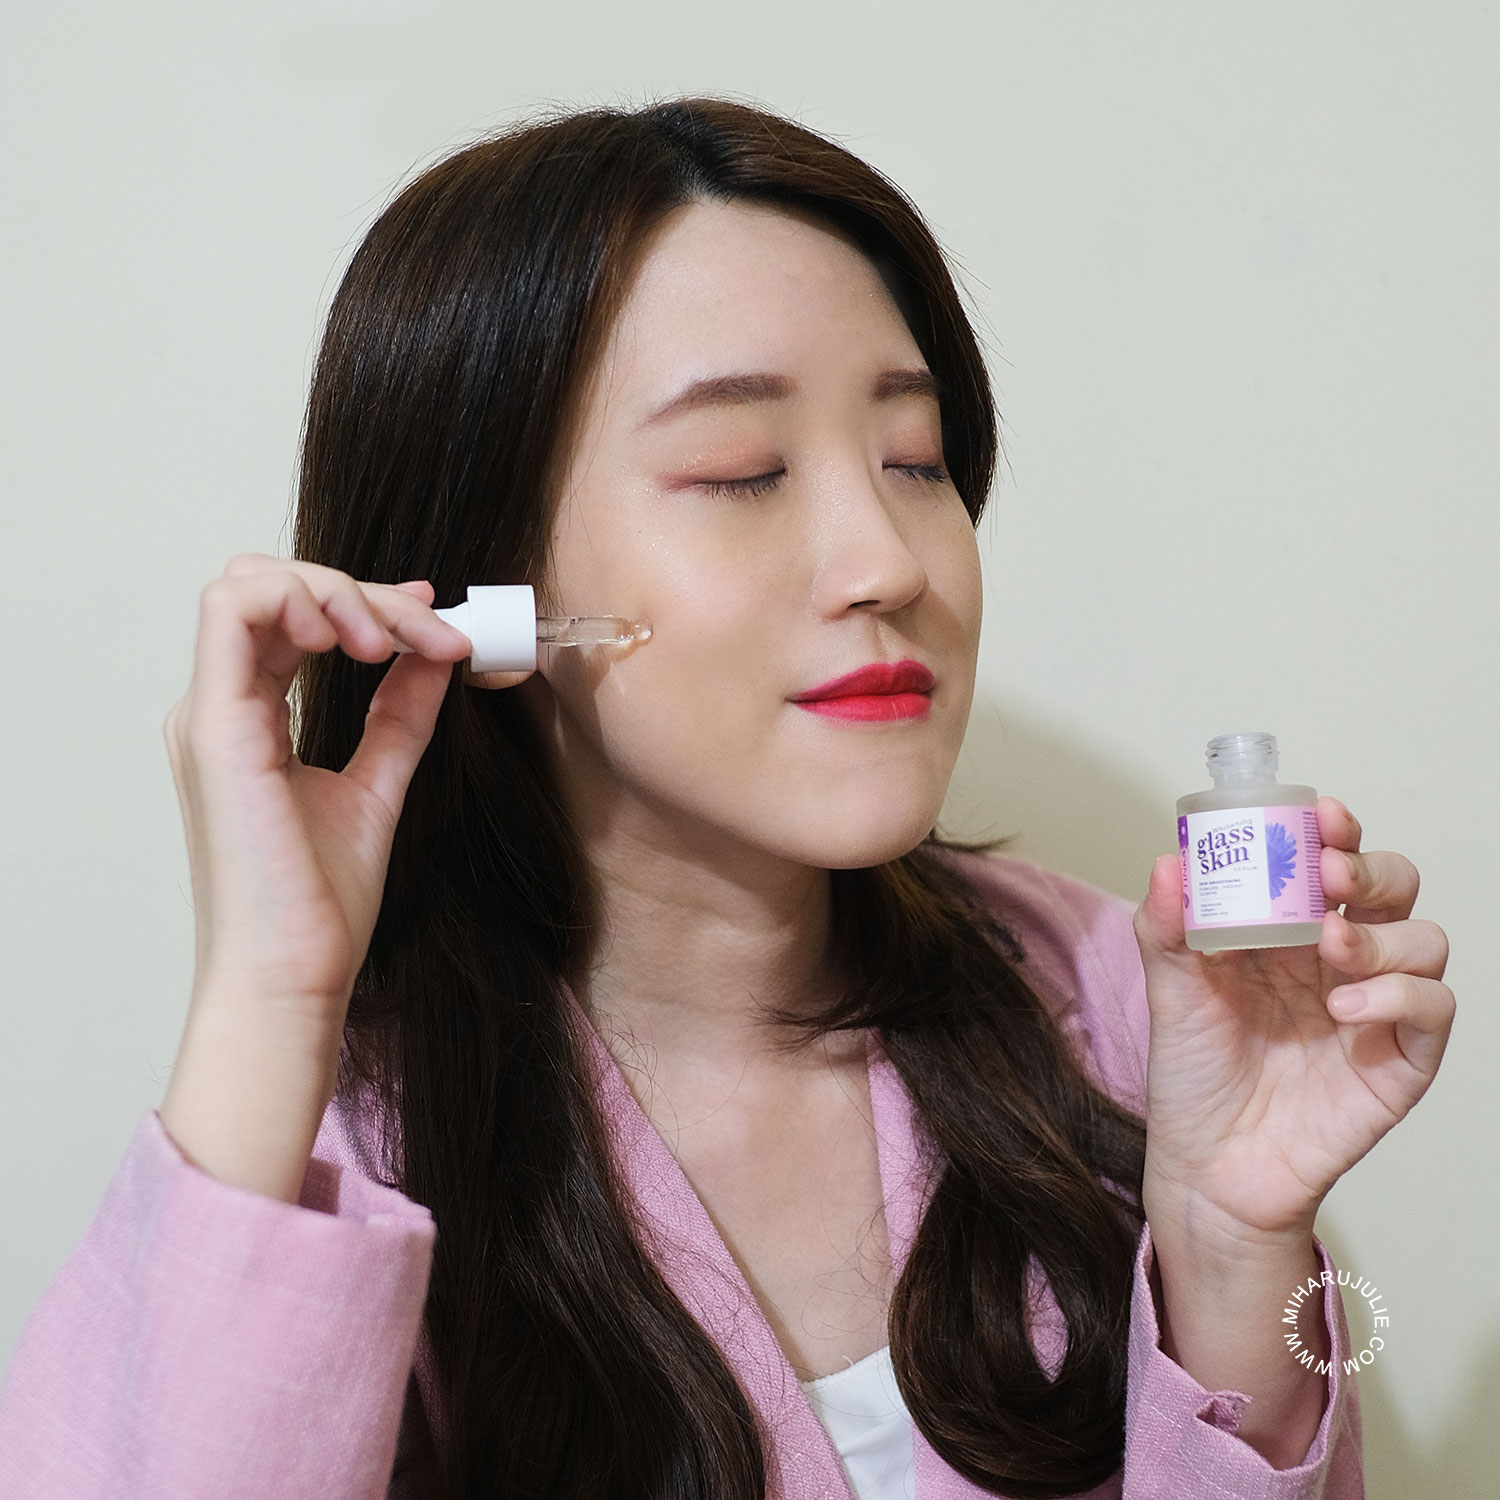 Tinka Wajah Glowing Ala Korea Glass Skin Whitening Serum